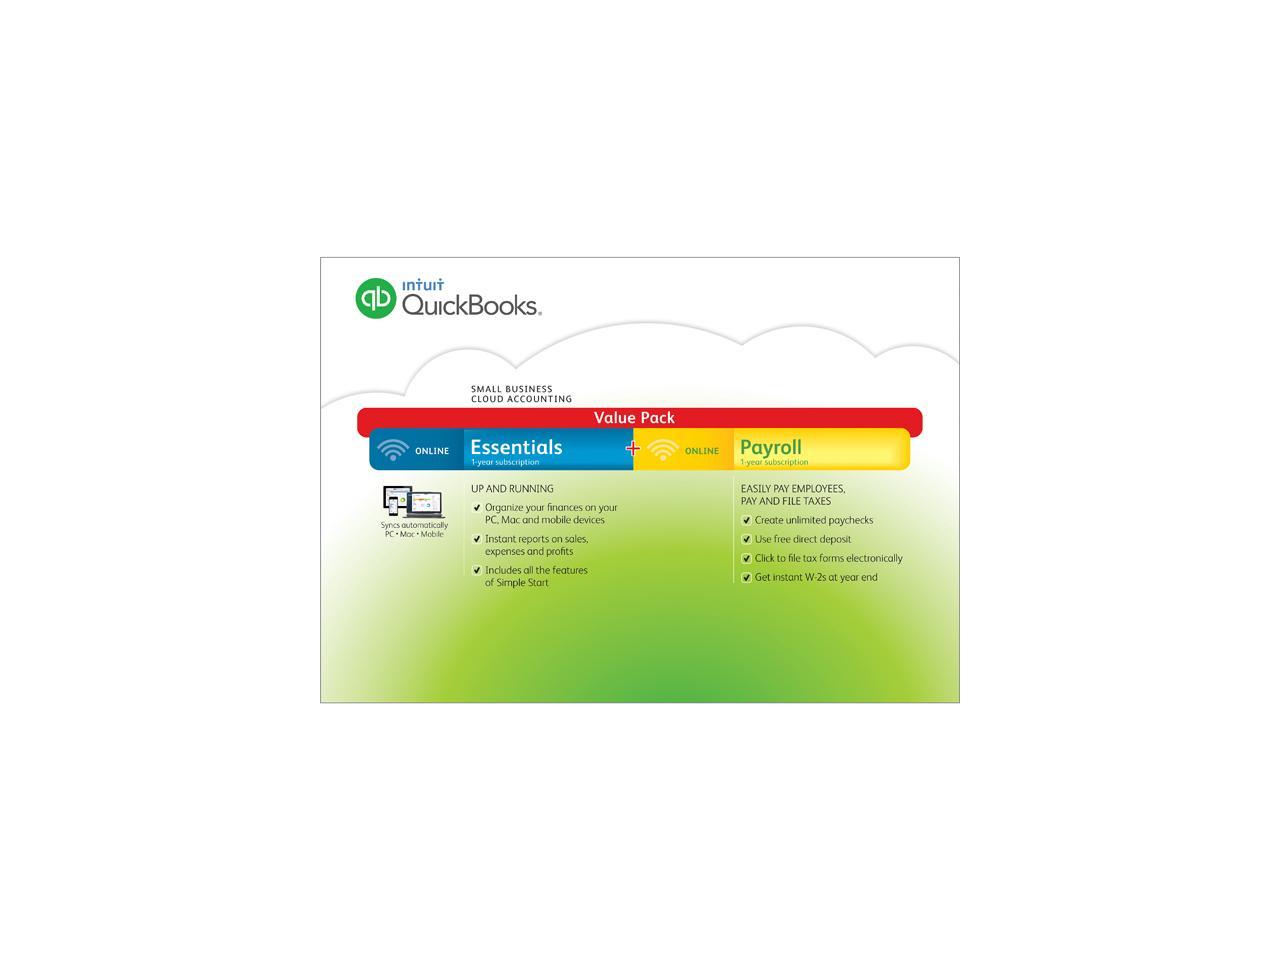 intuit quickbooks 2015 pro download